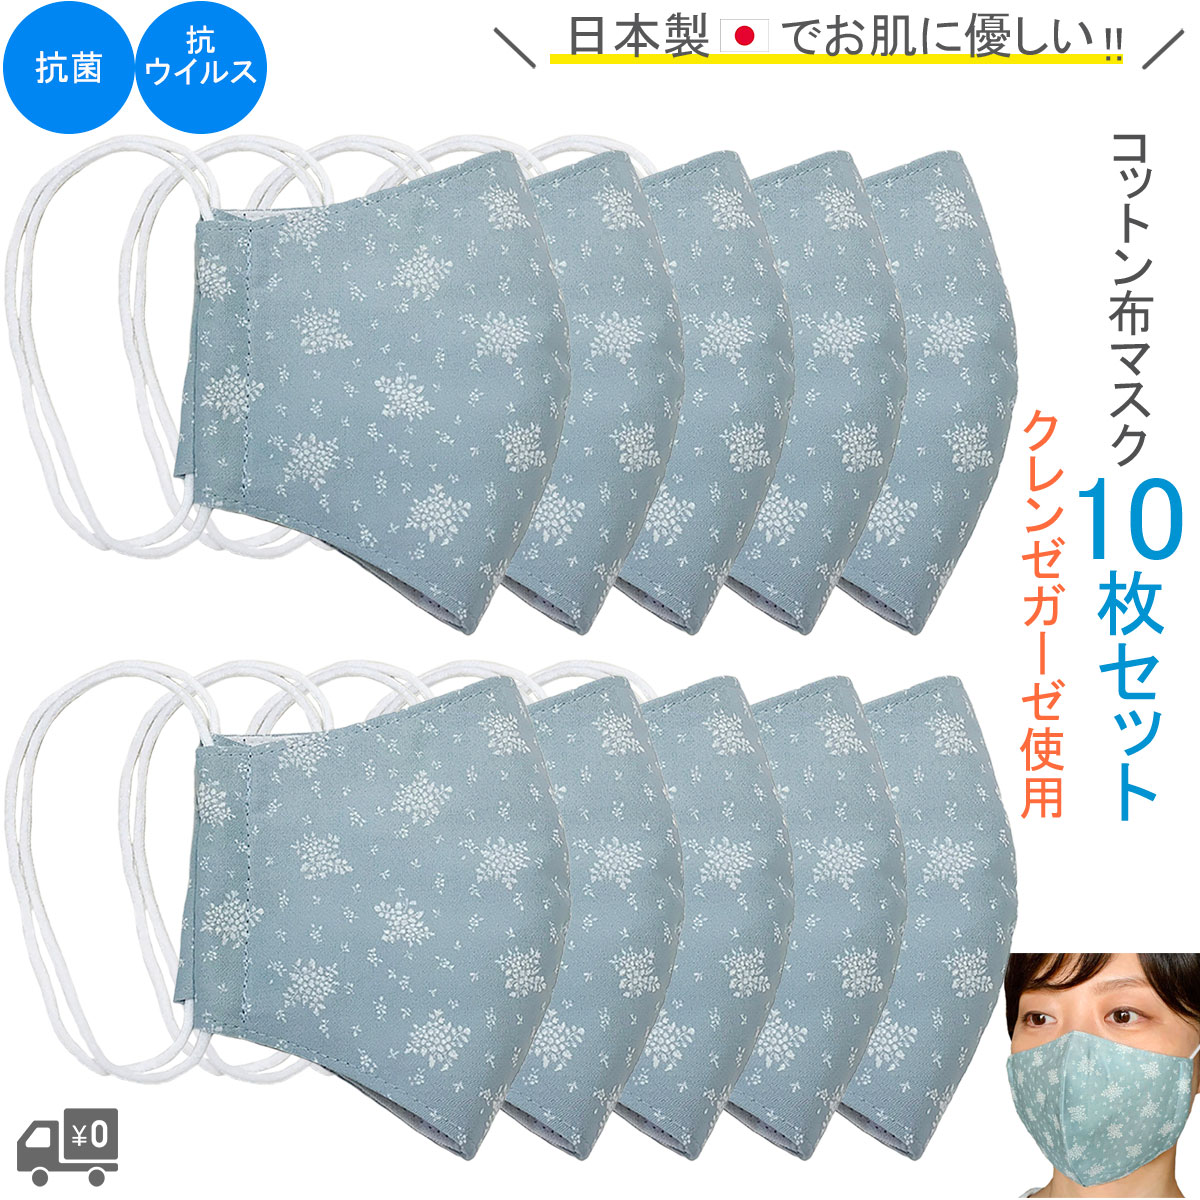 お得な10枚セット♪抗菌・抗ウイルス機能繊維クレンゼガーゼを使用したお肌にも優しい日本製・布マスクです。不織布マスクがつらい方にぜひ。洗って繰り返し使用いただけます！